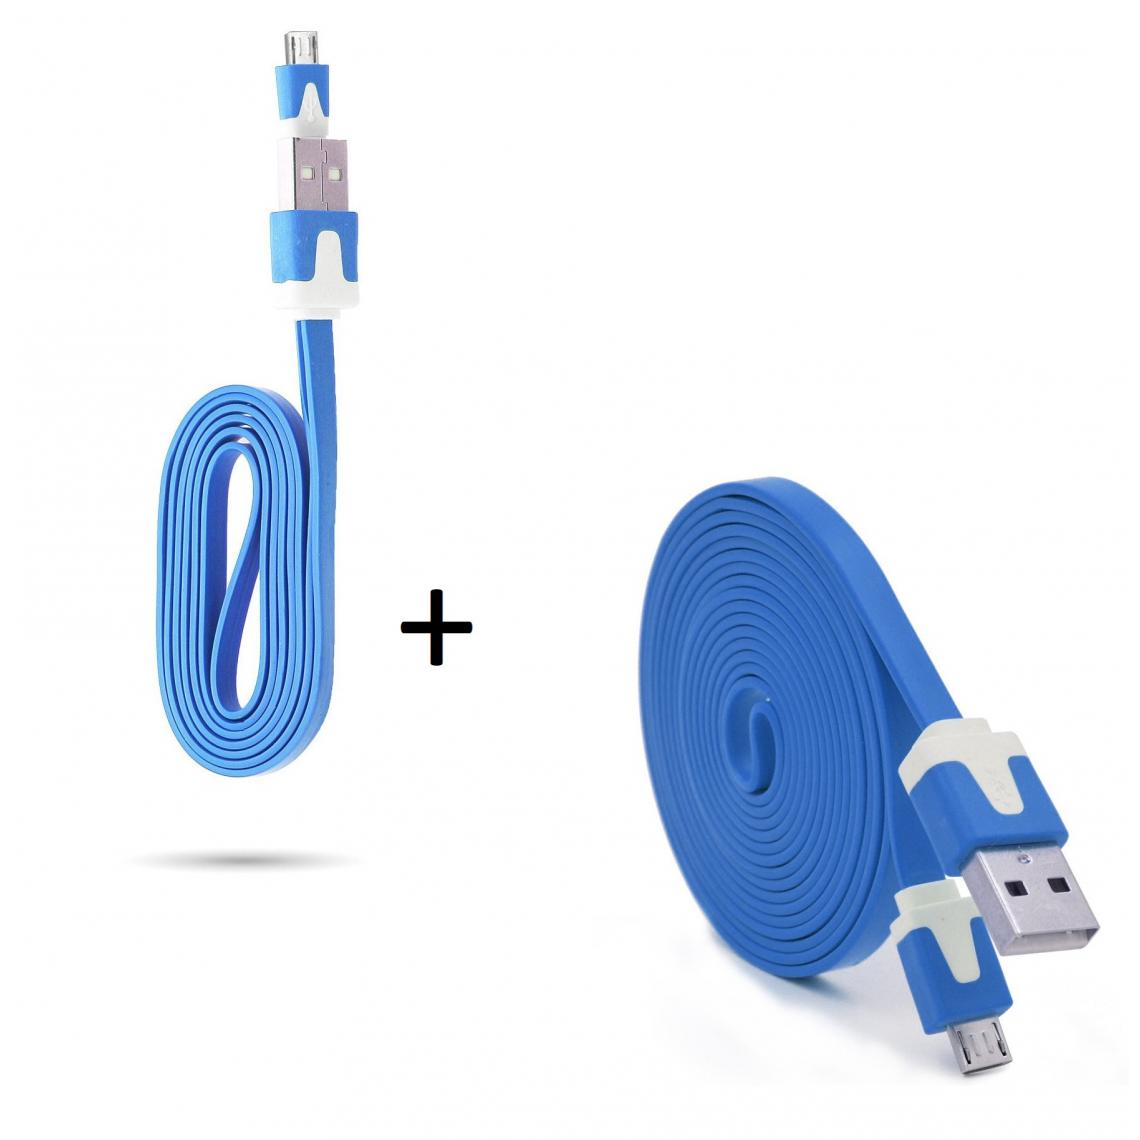 Shot - Pack Chargeur pour GIONEE F9 PLUS Smartphone Micro USB (Cable Noodle 3m + Cable Noodle 1m) Android (BLEU) - Chargeur secteur téléphone